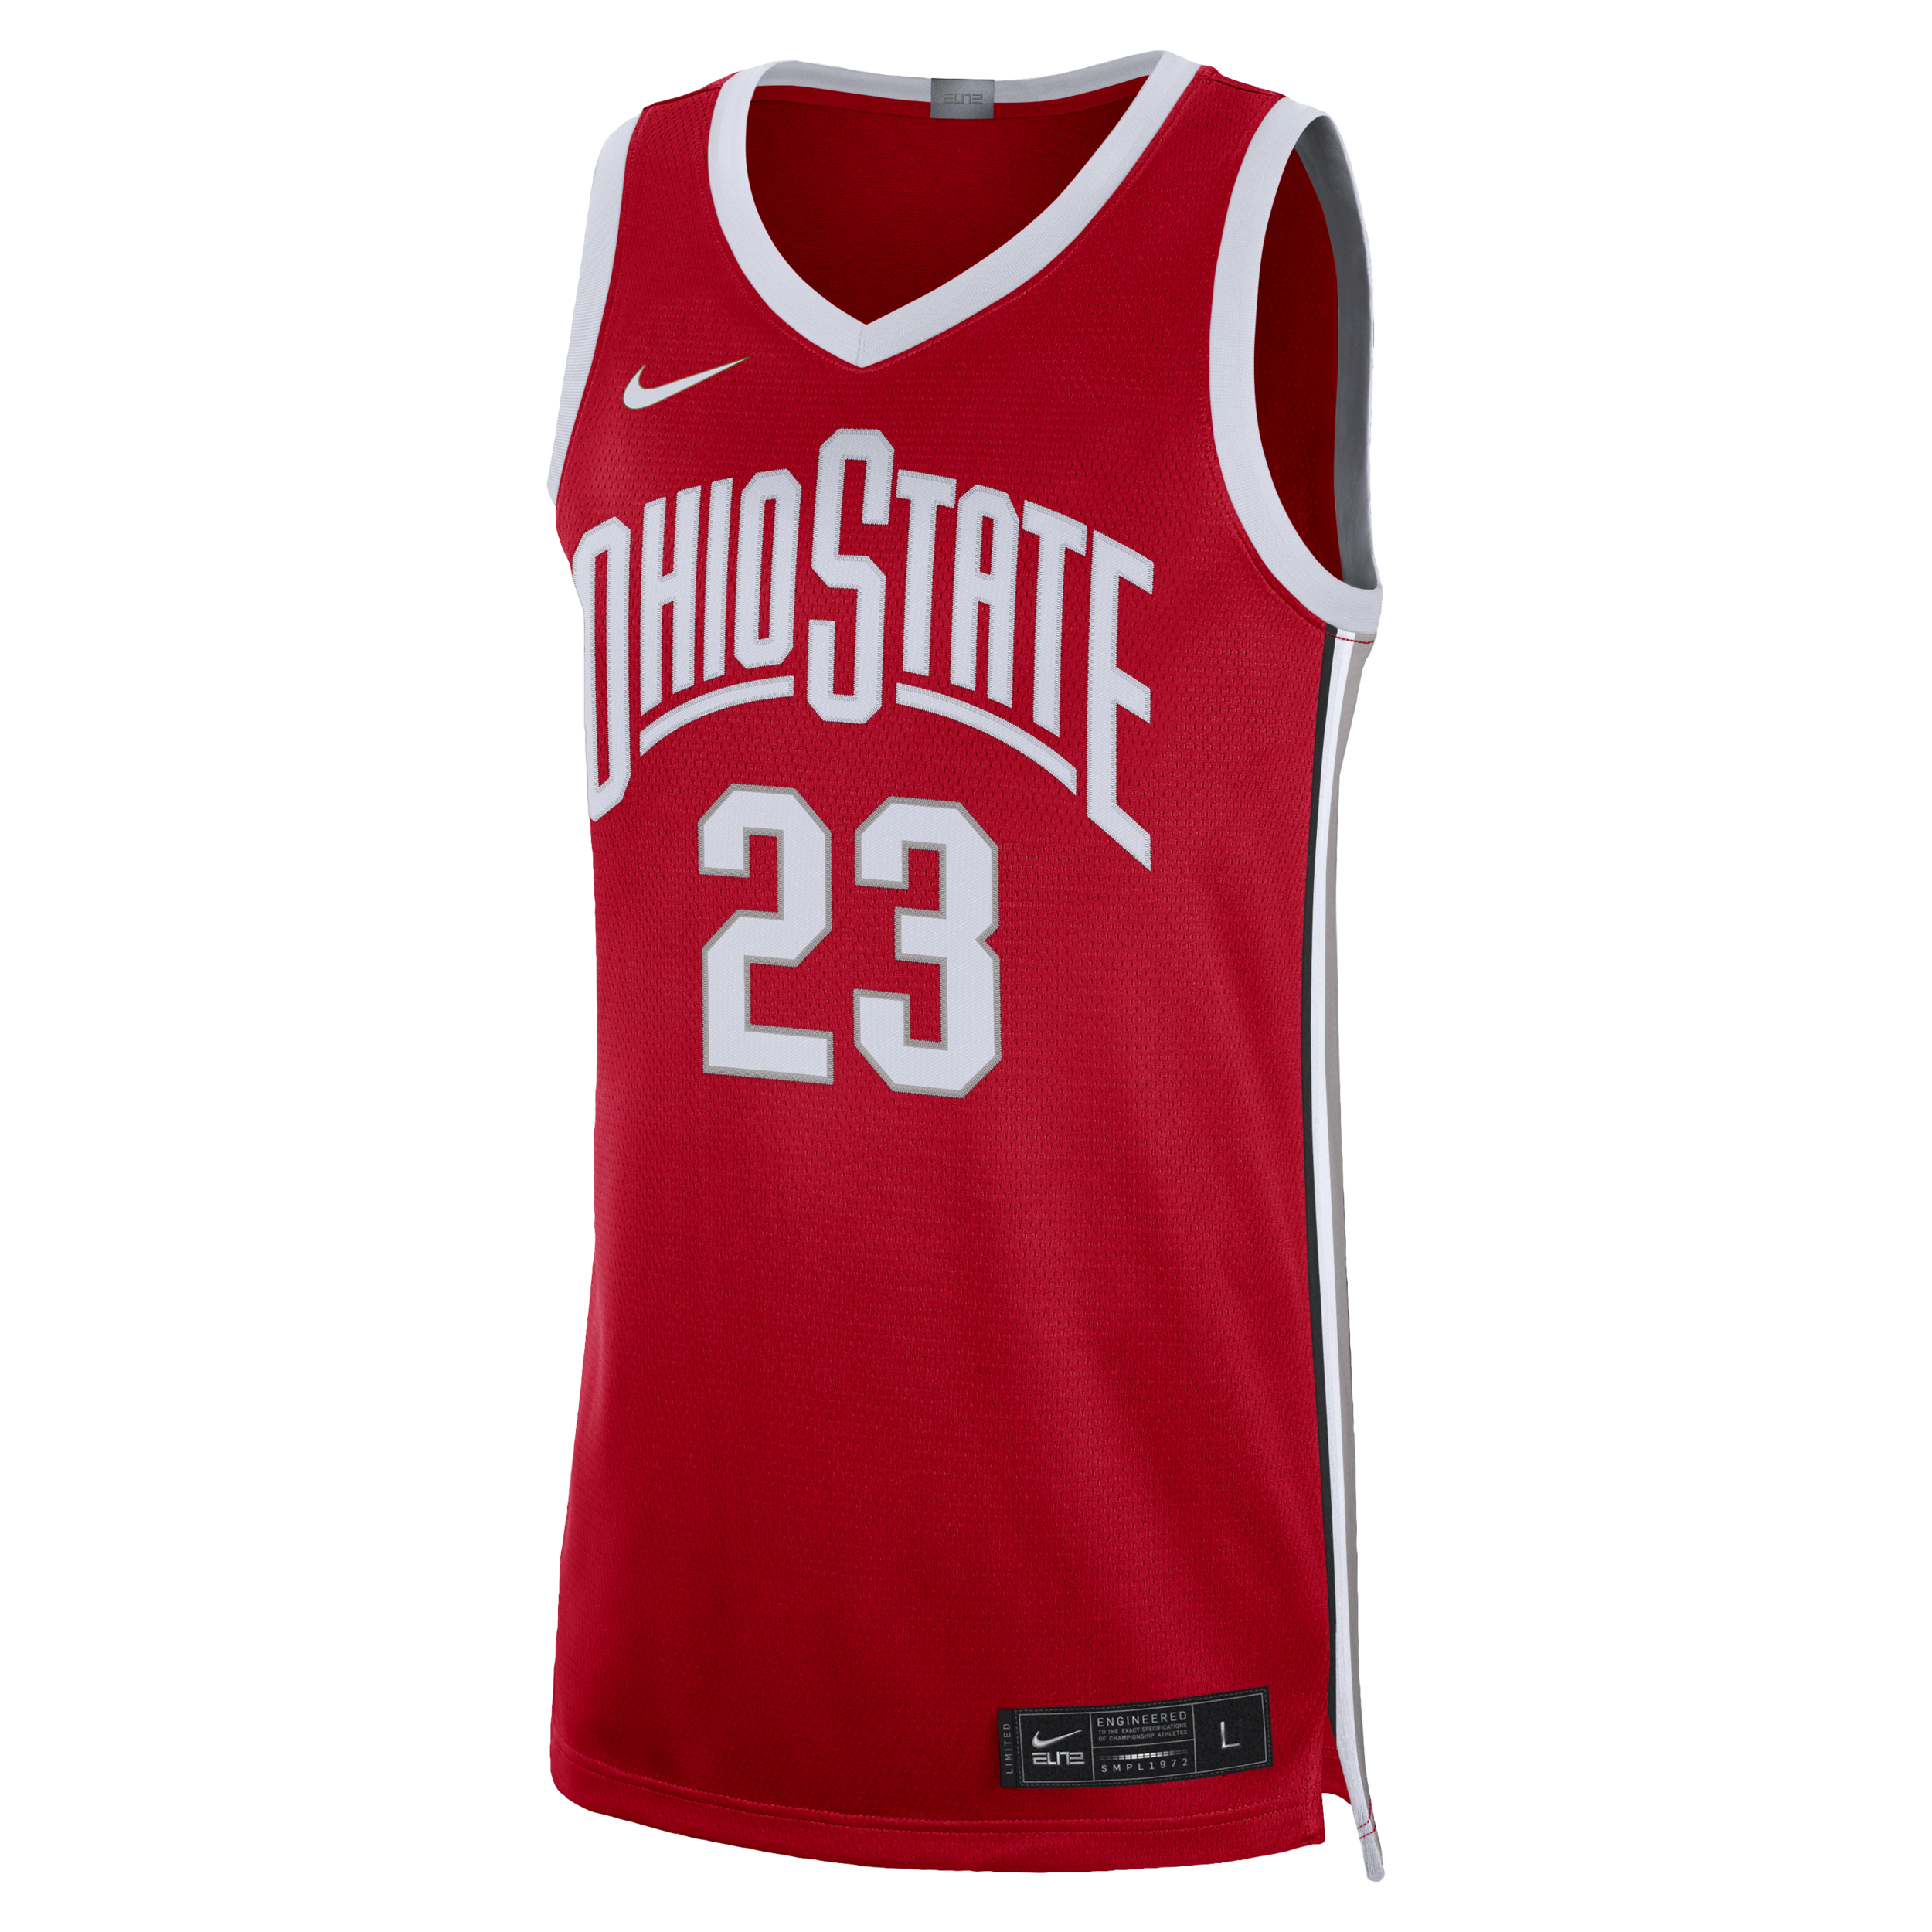 Ohio State Limited Nike Dri-FIT College-basketballtrøje til mænd - rød